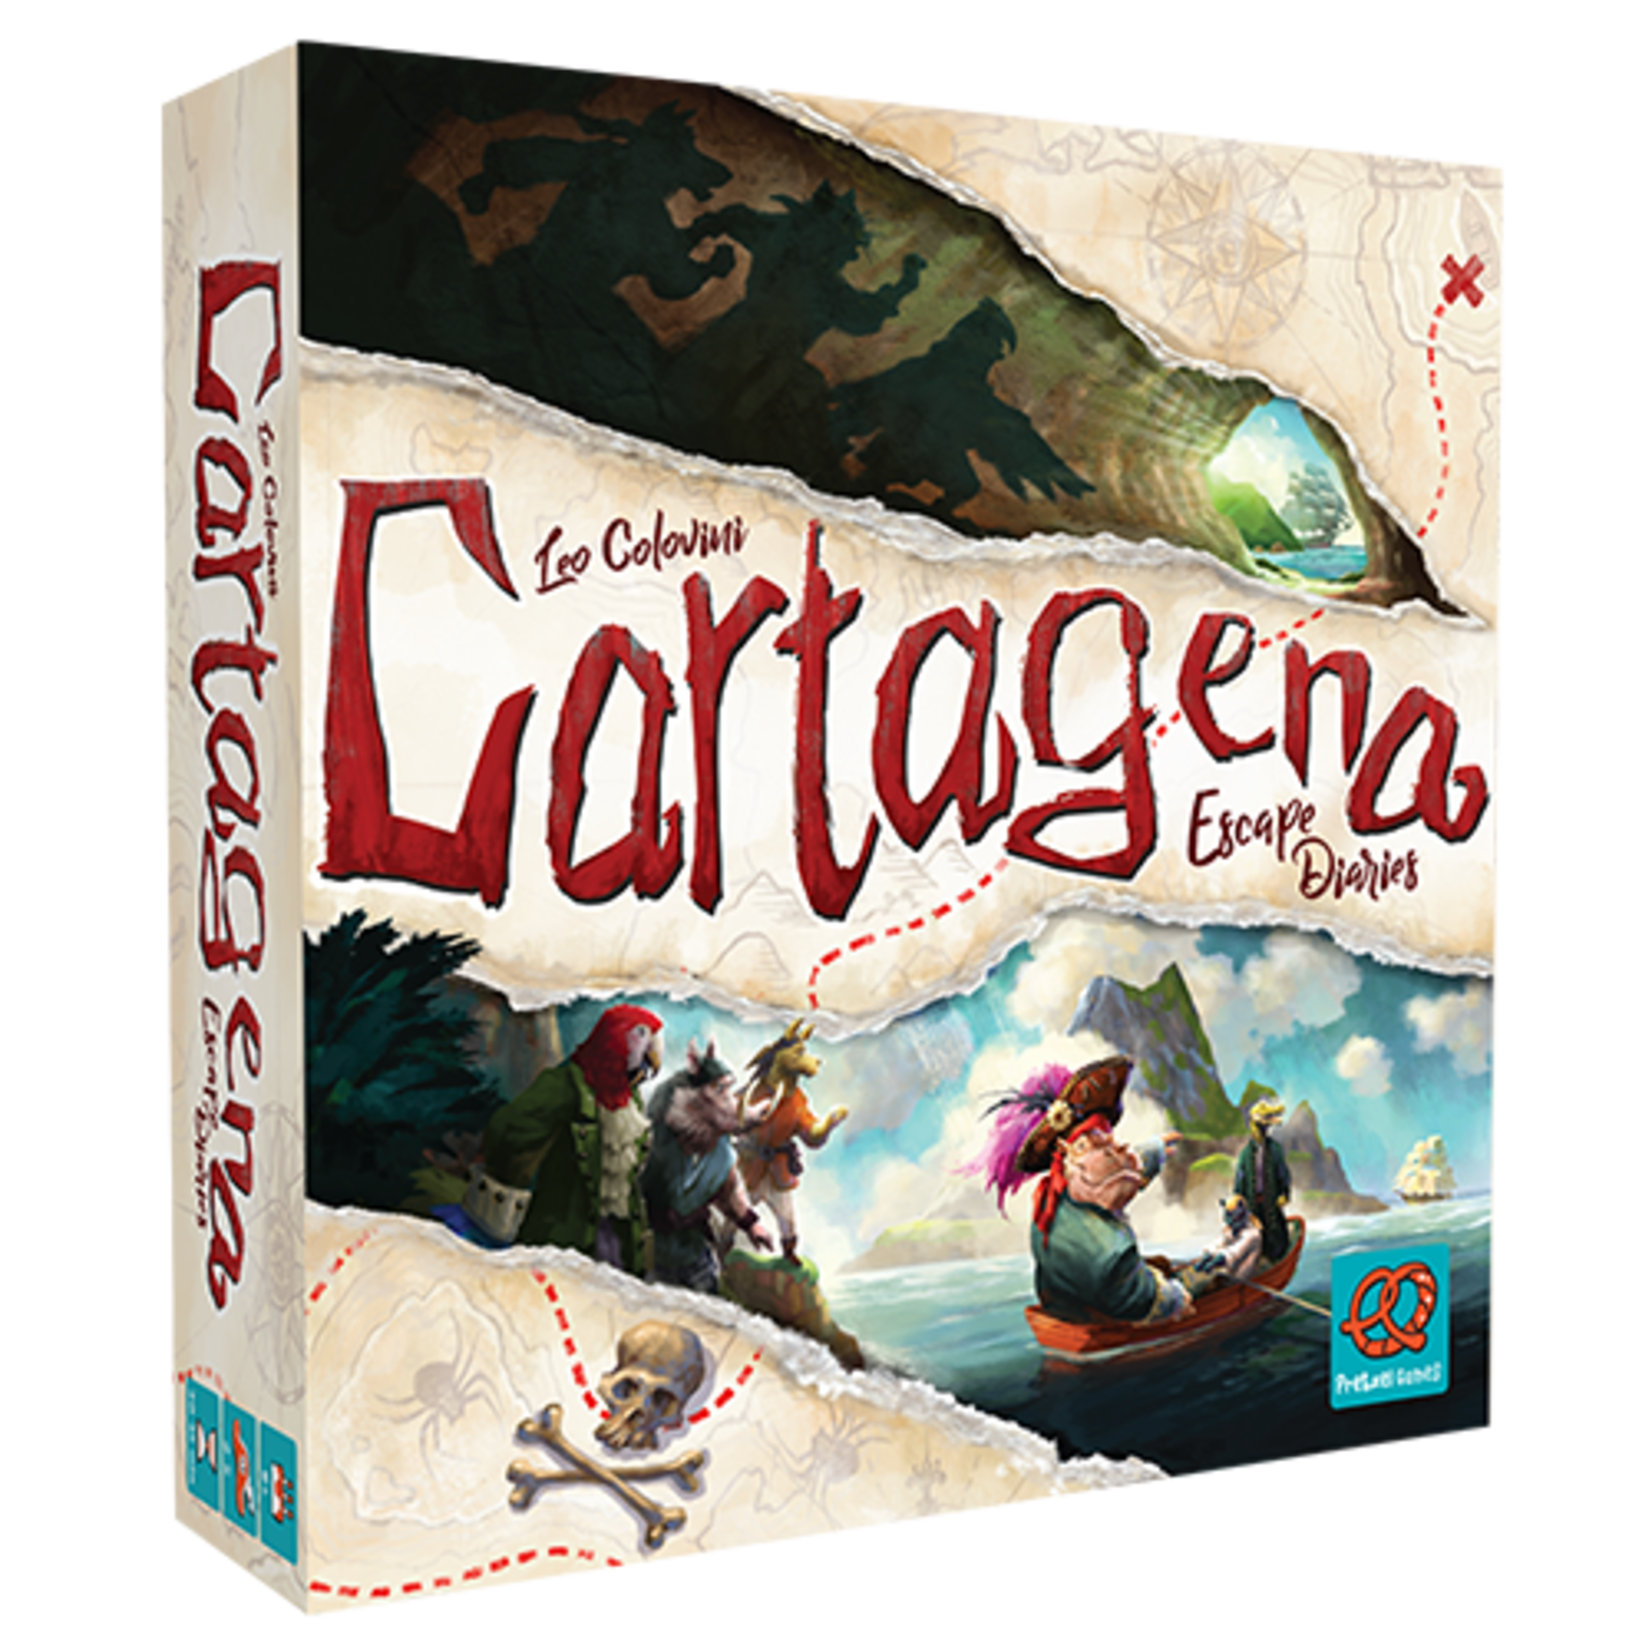 Pretzel Games Cartagena Escape Diaries